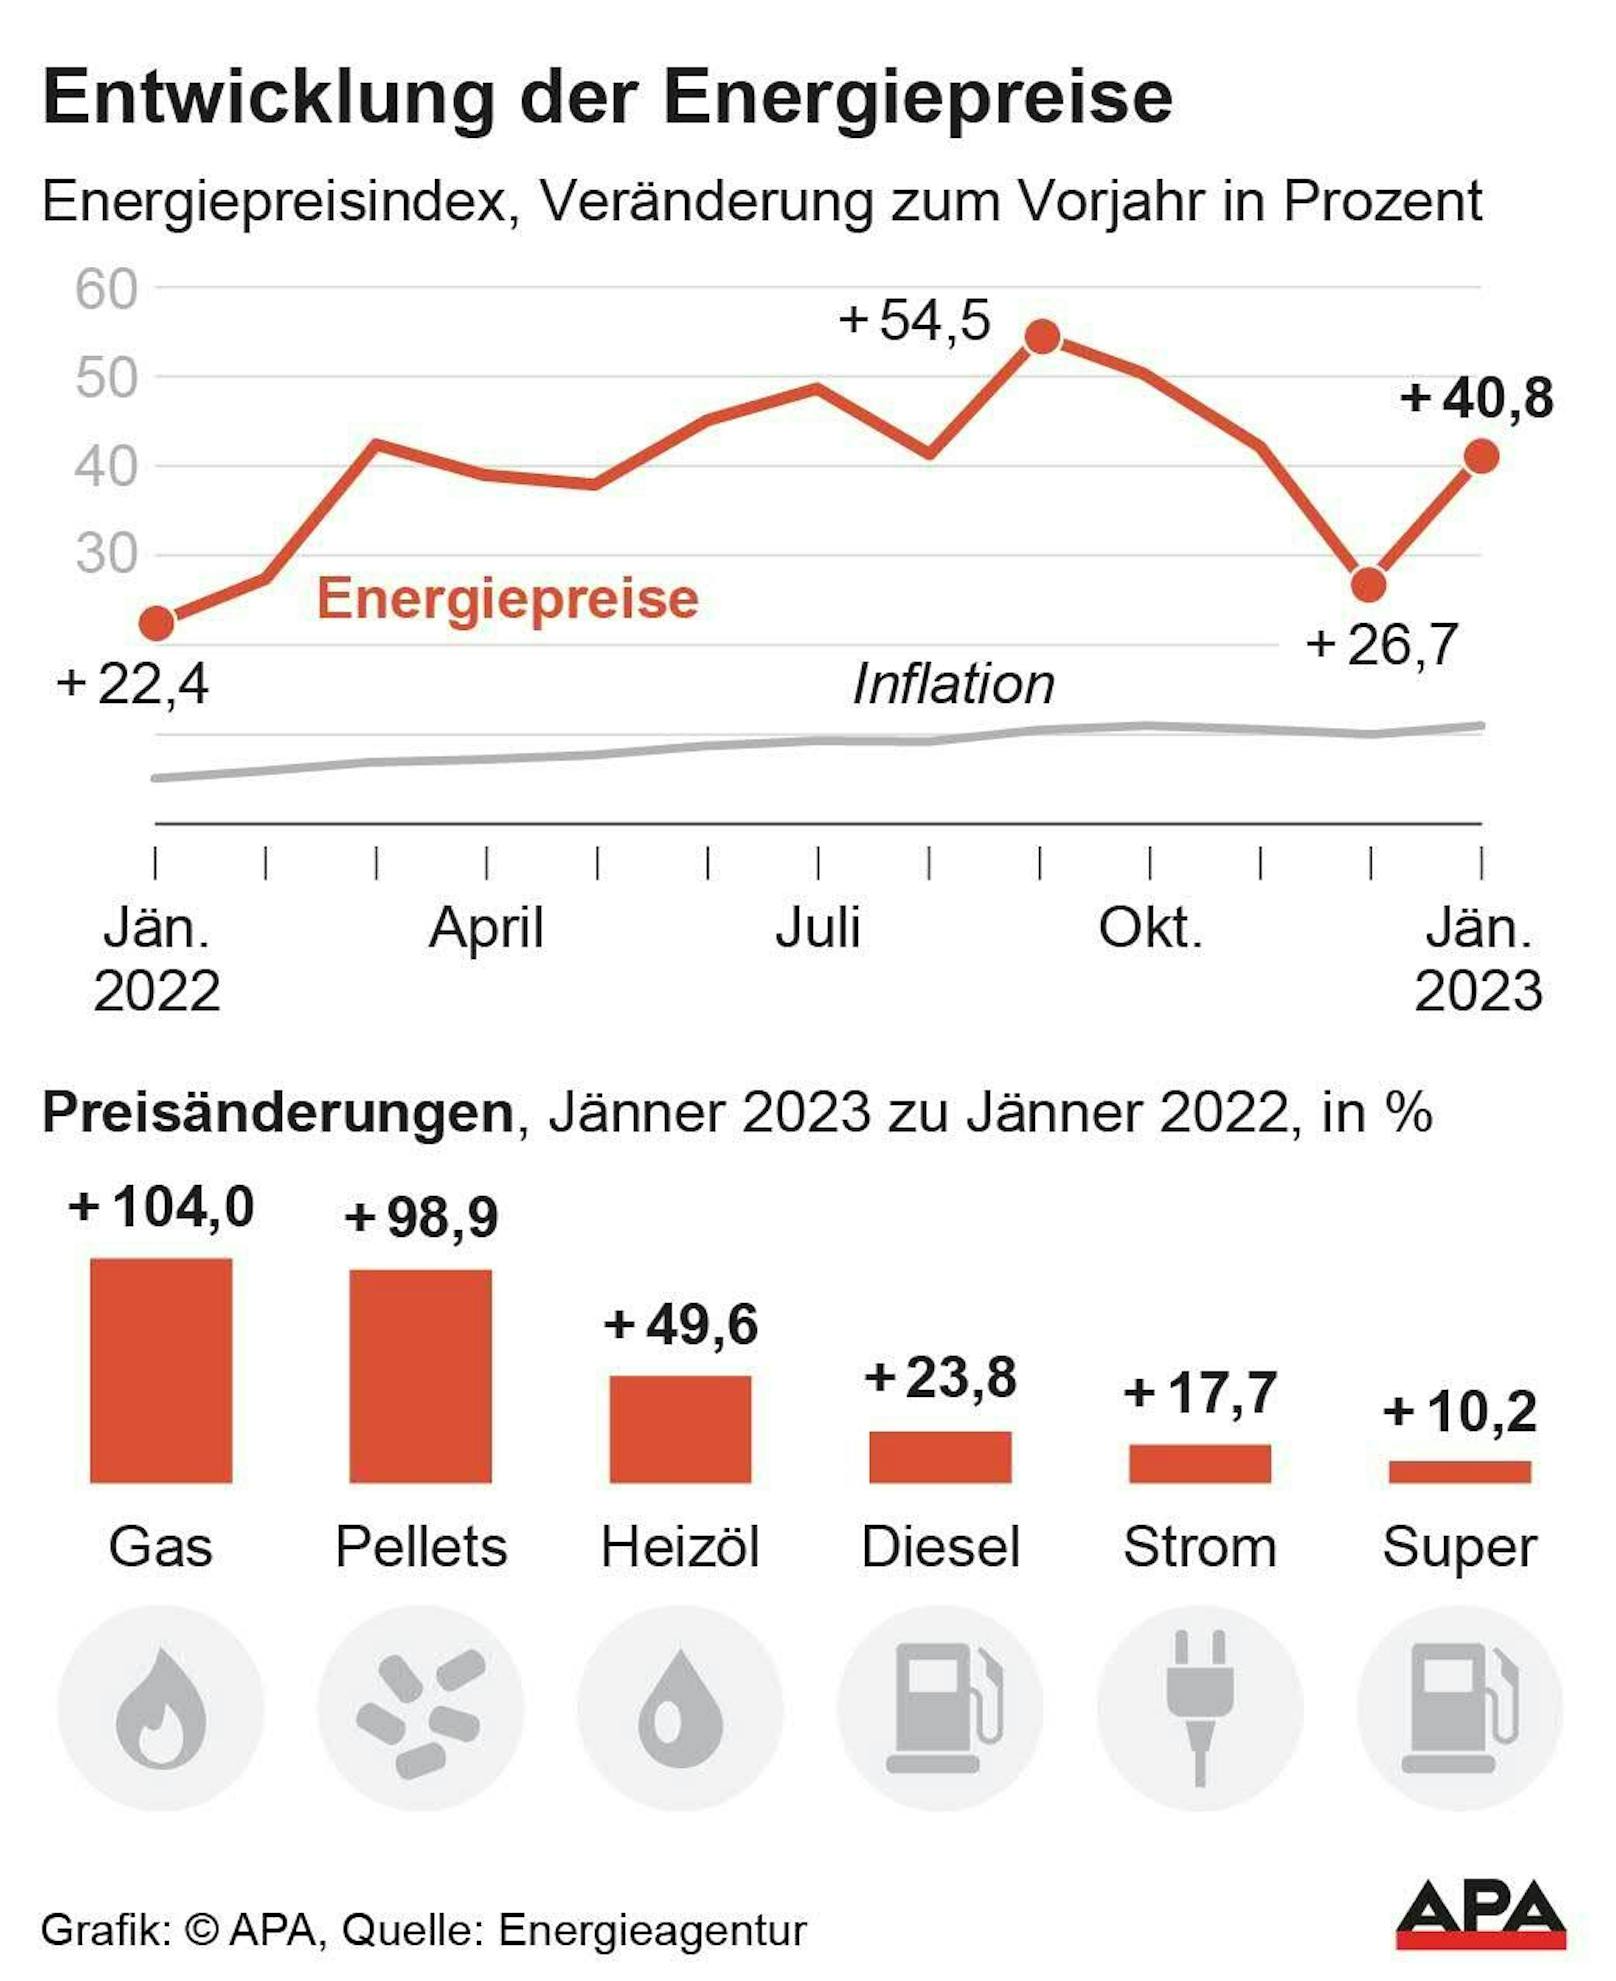 Energiepreisindex im Vergleich zur Inflation Jänner 2022-2023